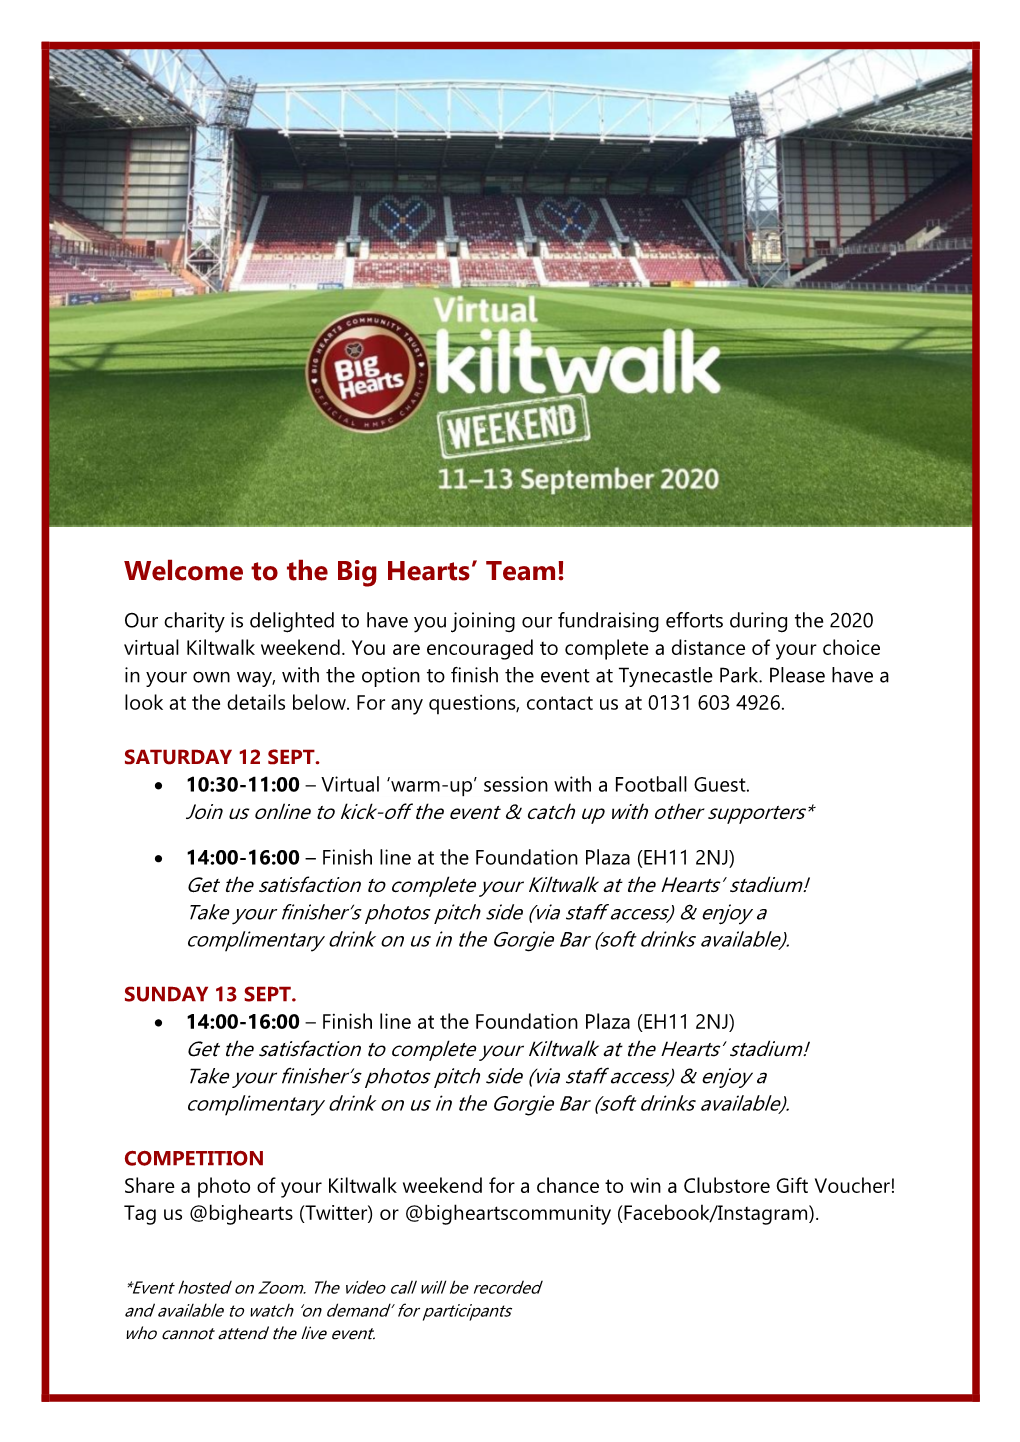 Big Hearts Kiltwalk Info to Registered Participants